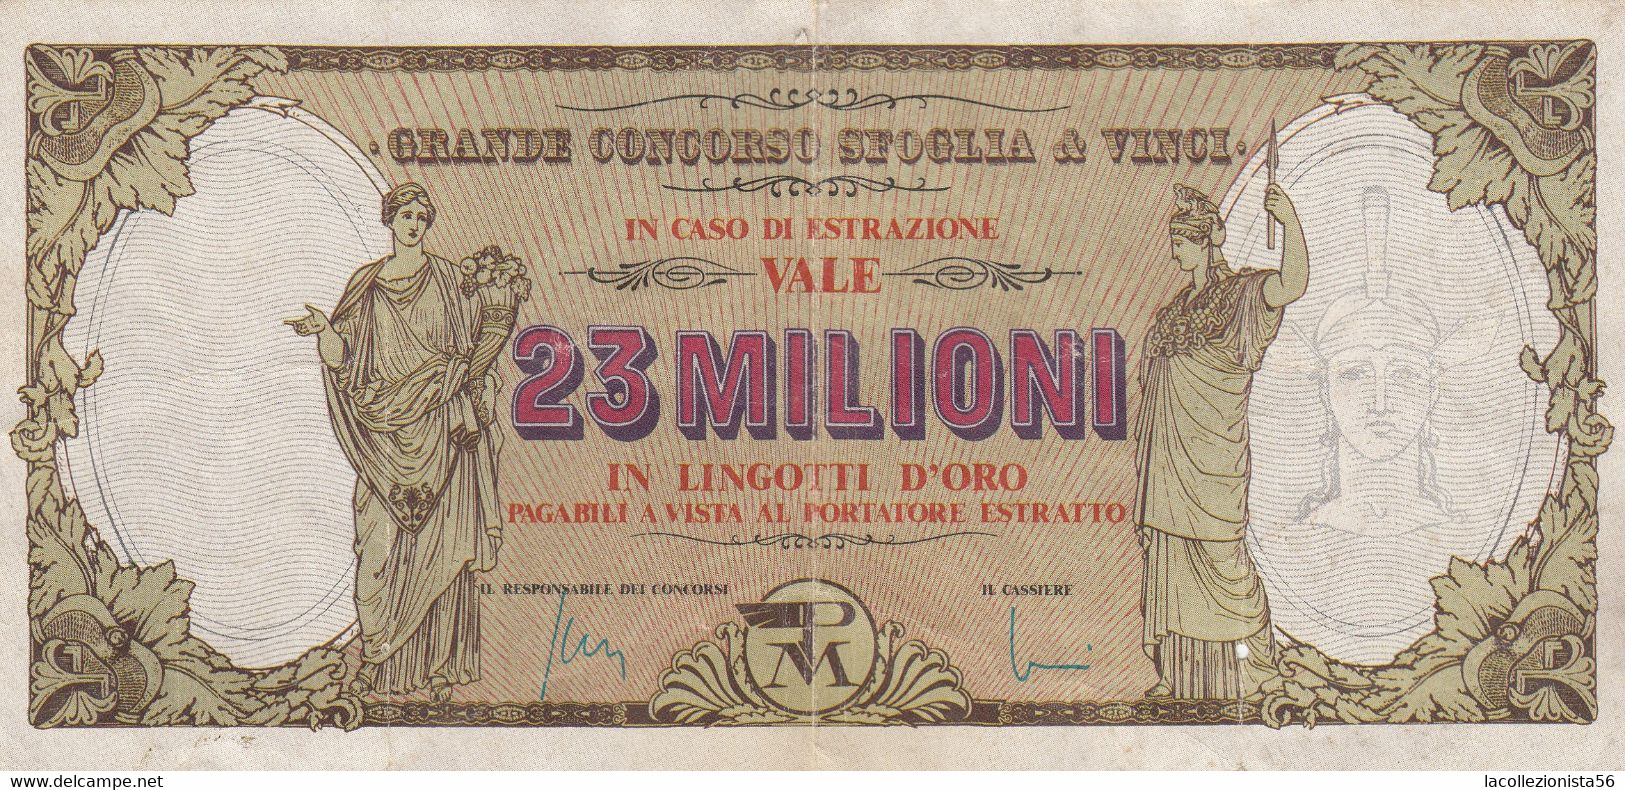 10155-GRANDE CONCORSO SFOGLIA E VINCI-POSTAL MARKET - Lottery Tickets